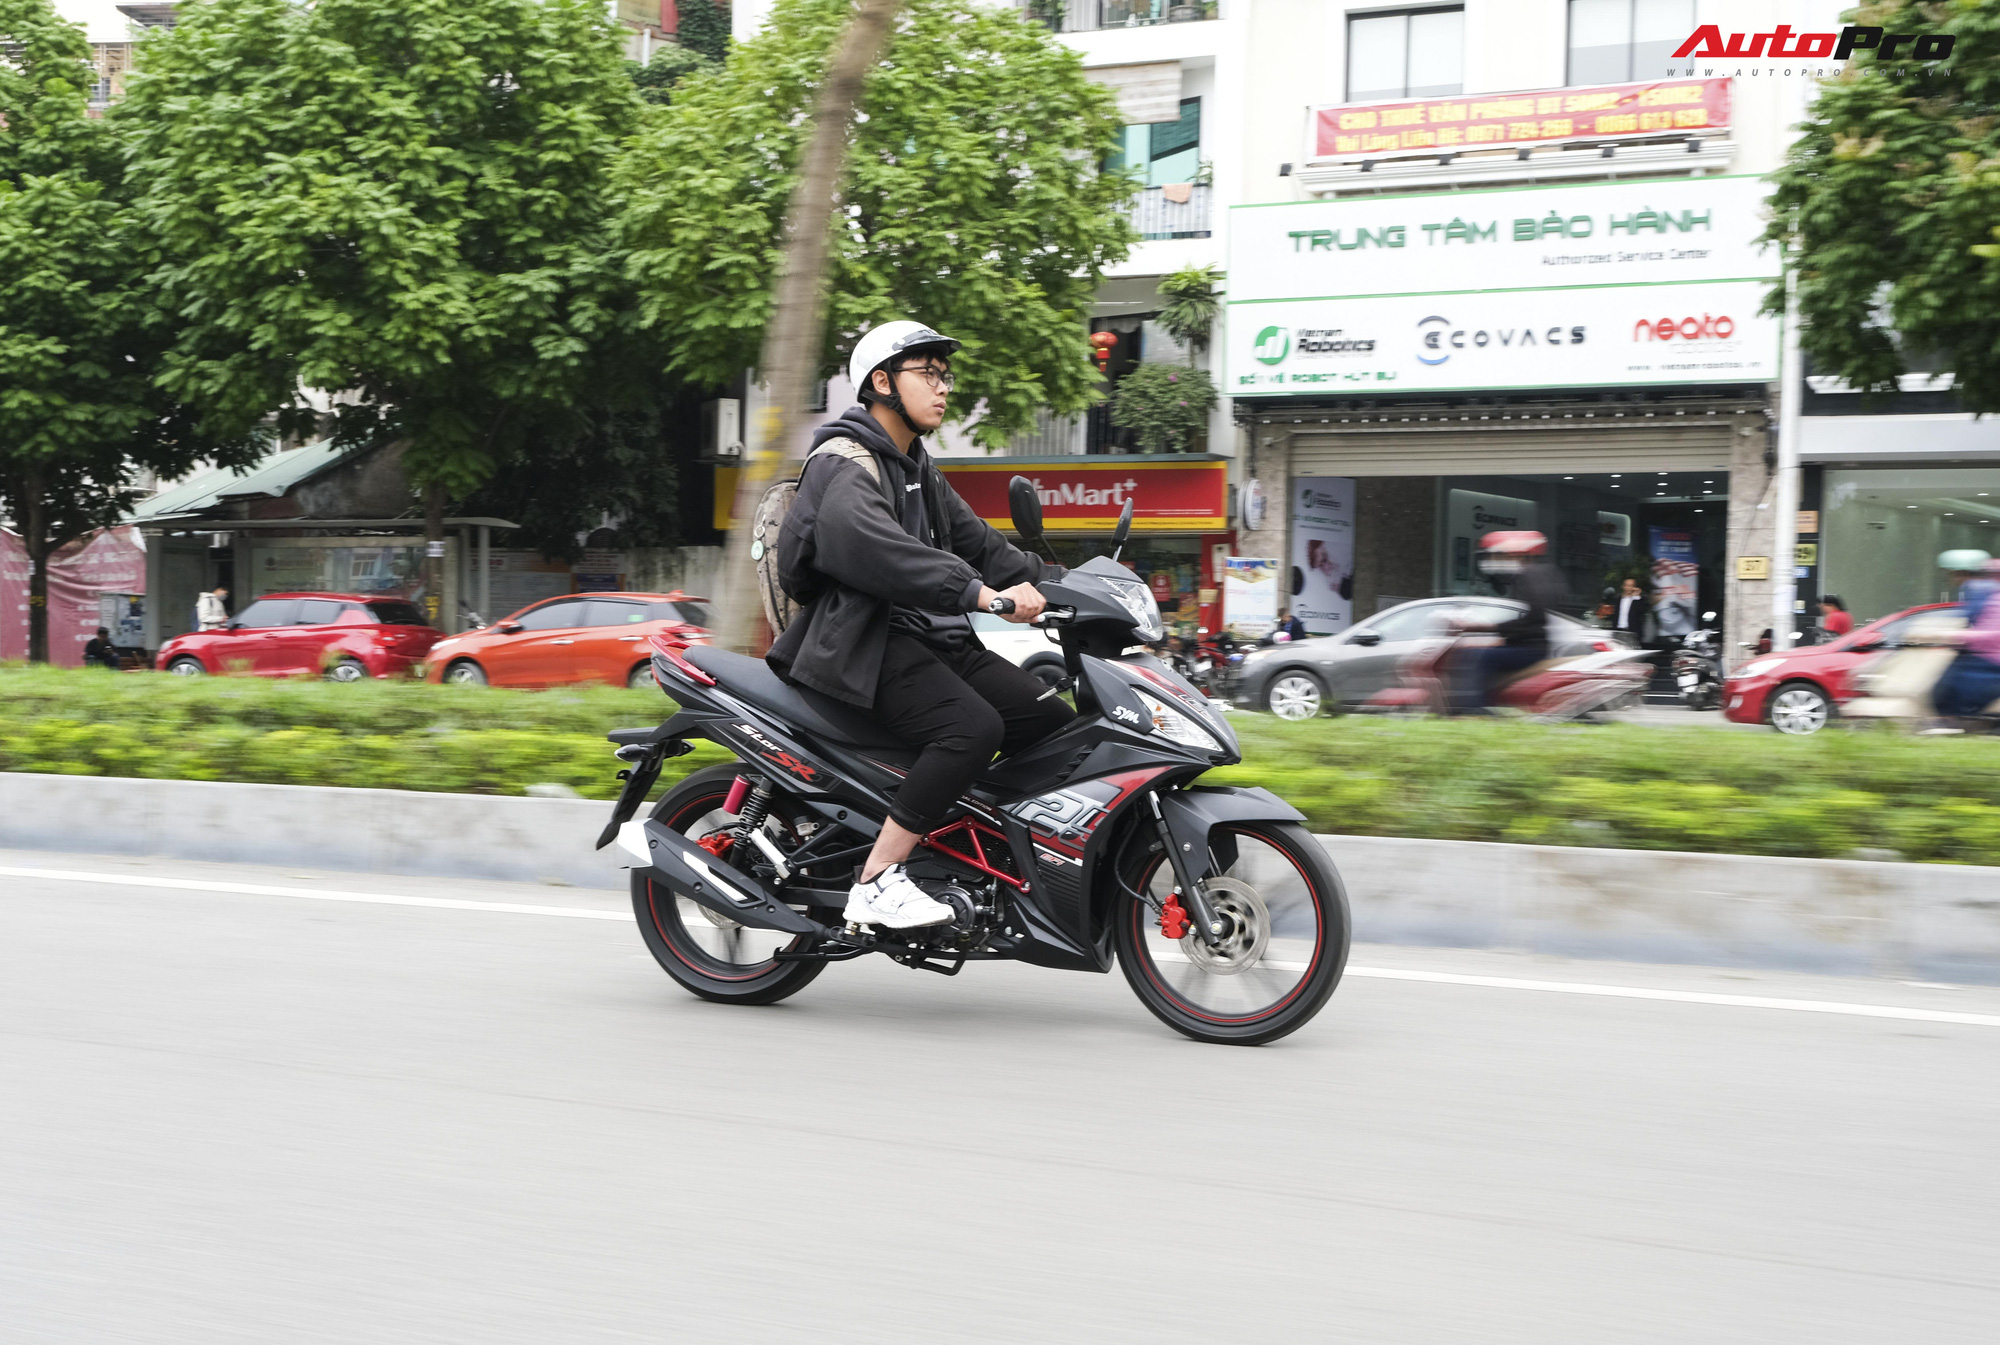 Đánh giá SYM Star SR 125 EFI - Xe côn tay rẻ nhất Việt Nam và những điều cần biết cho người nhập môn - Ảnh 11.